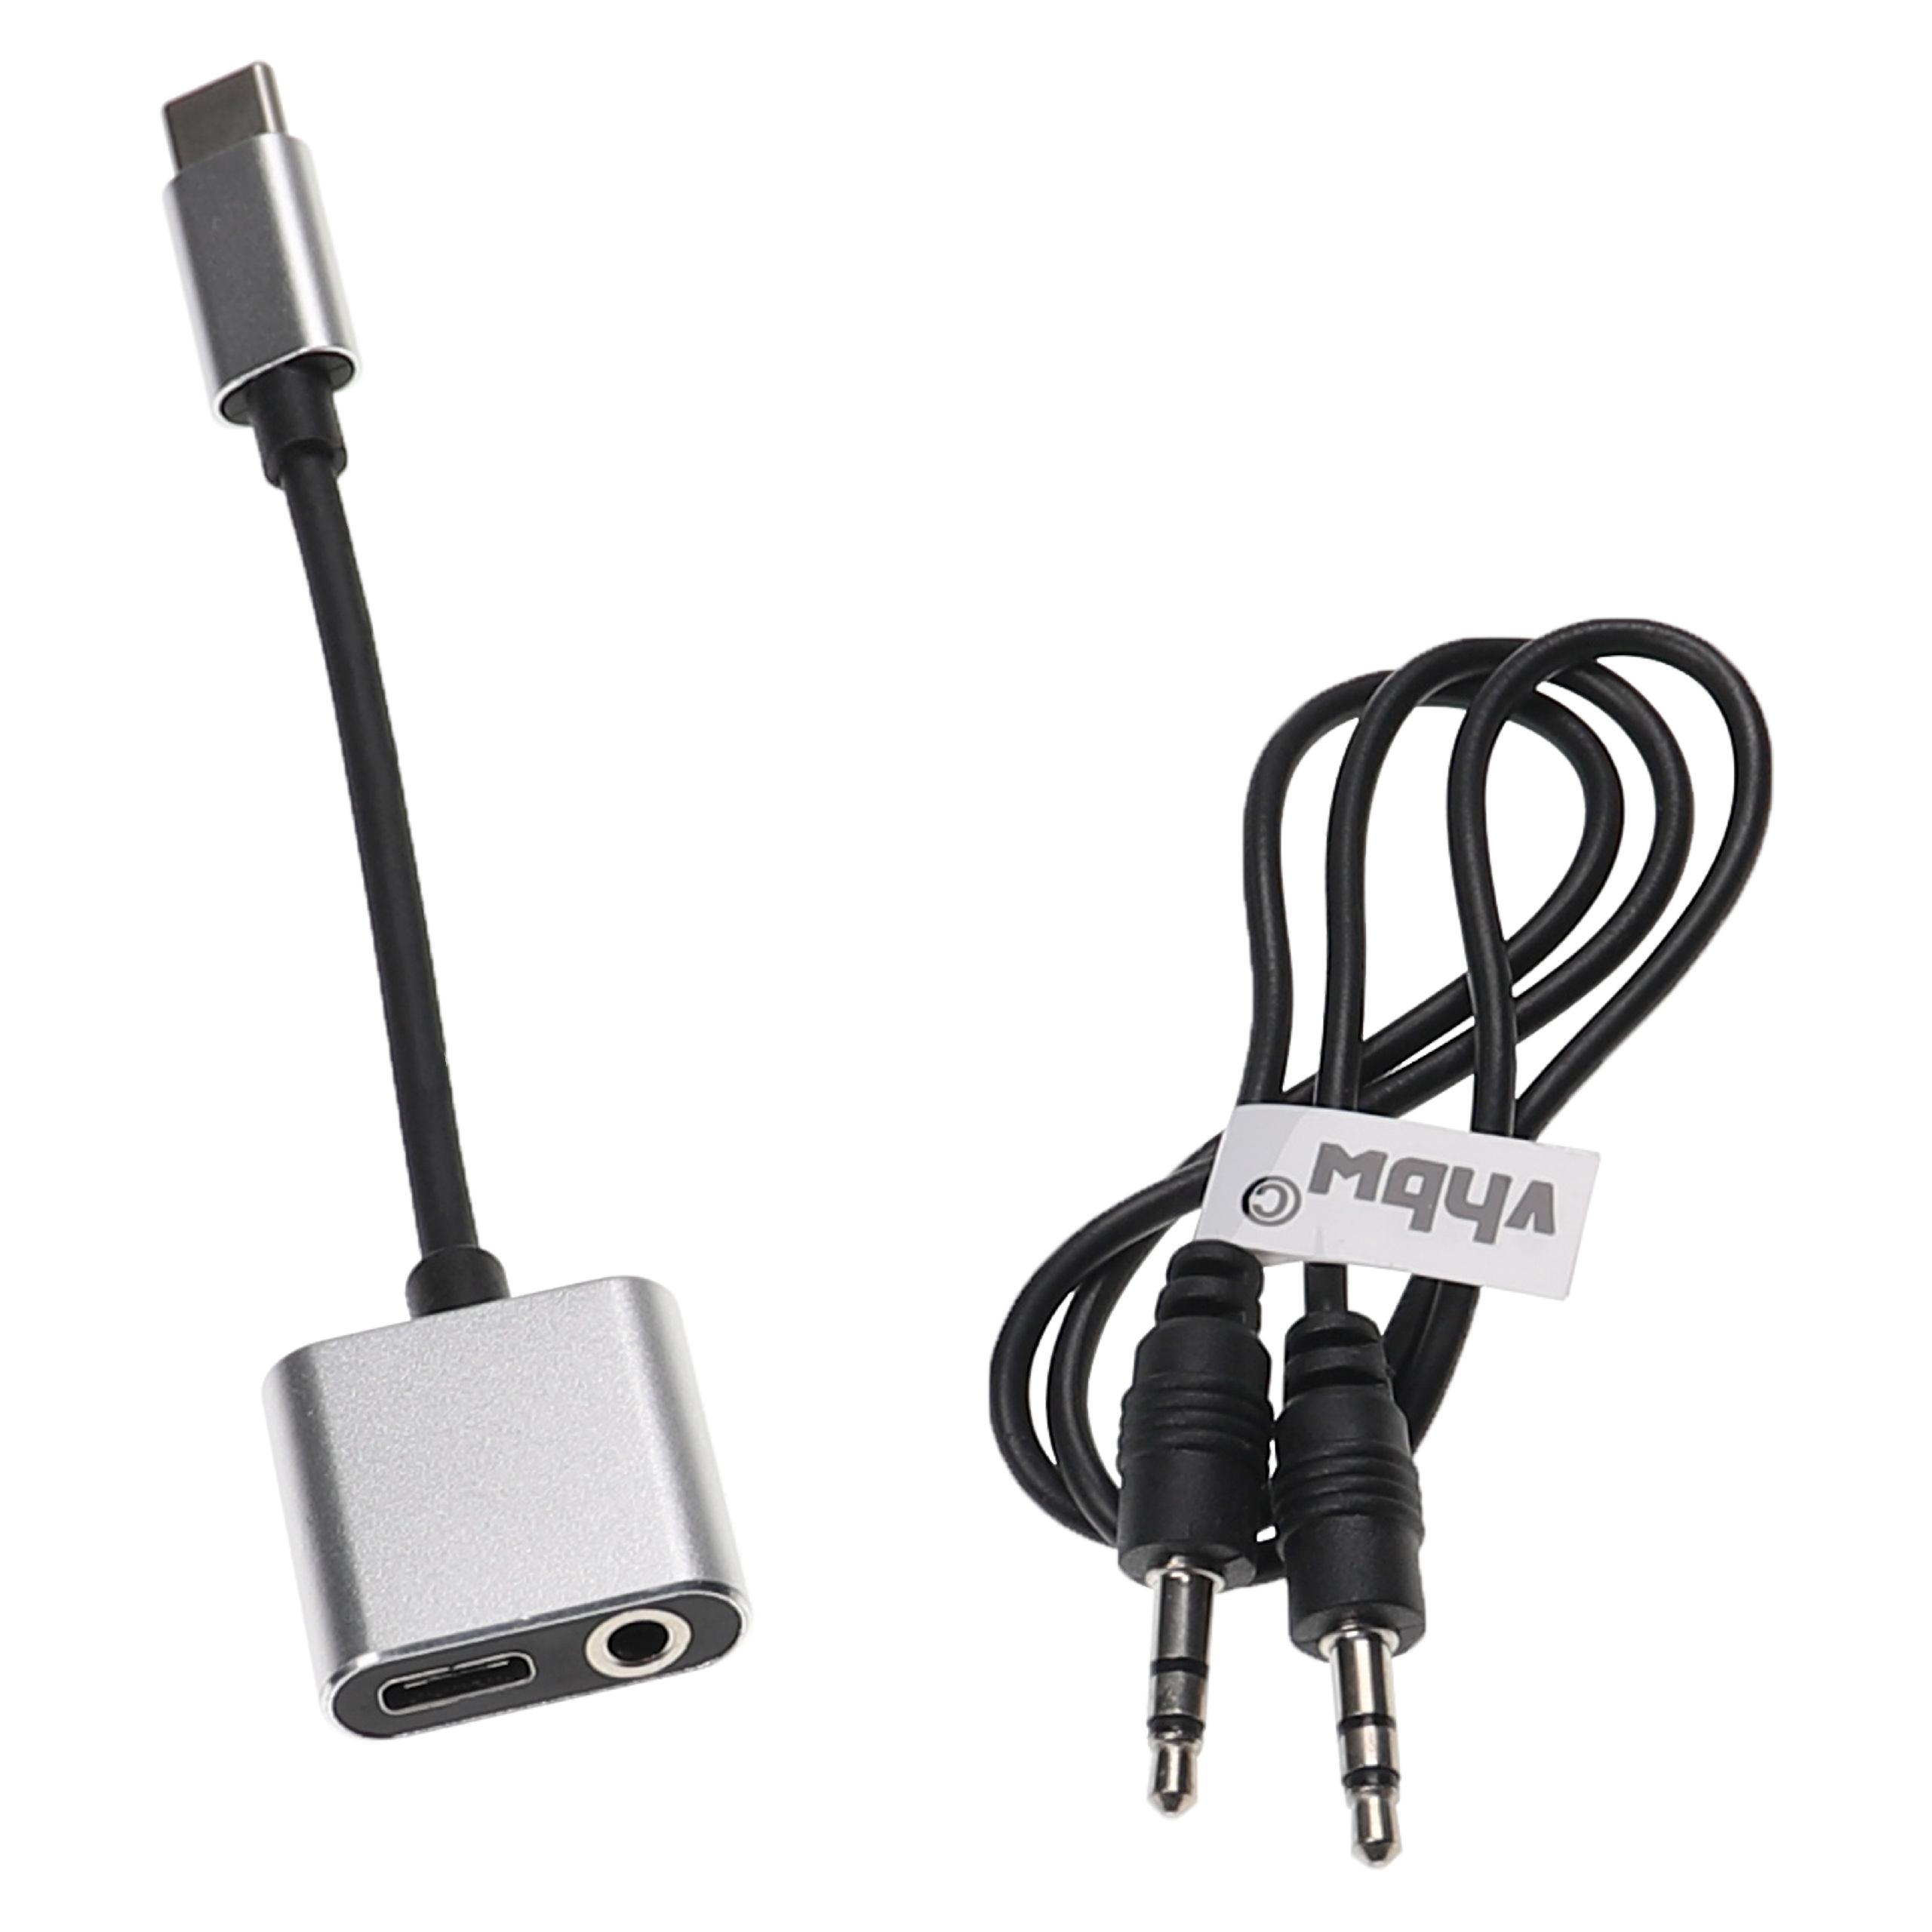 Adaptador 2 en 1 USB-C a AUX para Huawei, Xiaomi, Motorola, etc. - Incl. cable jack